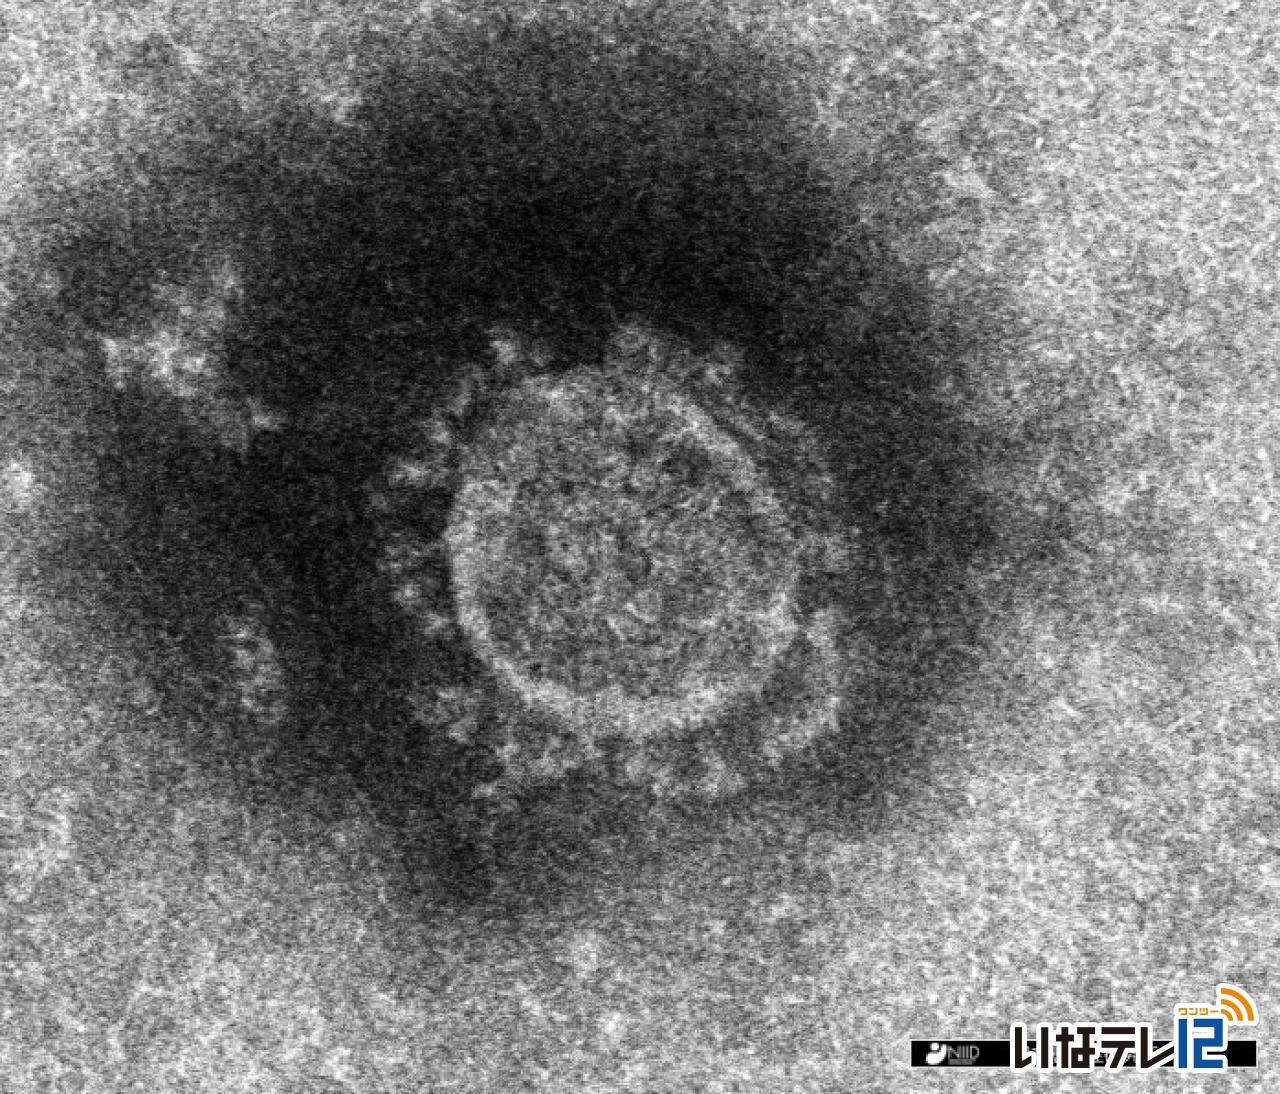 長野県内で上伊那の２６人を含む３２７人の新型コロナウイルス感染確認